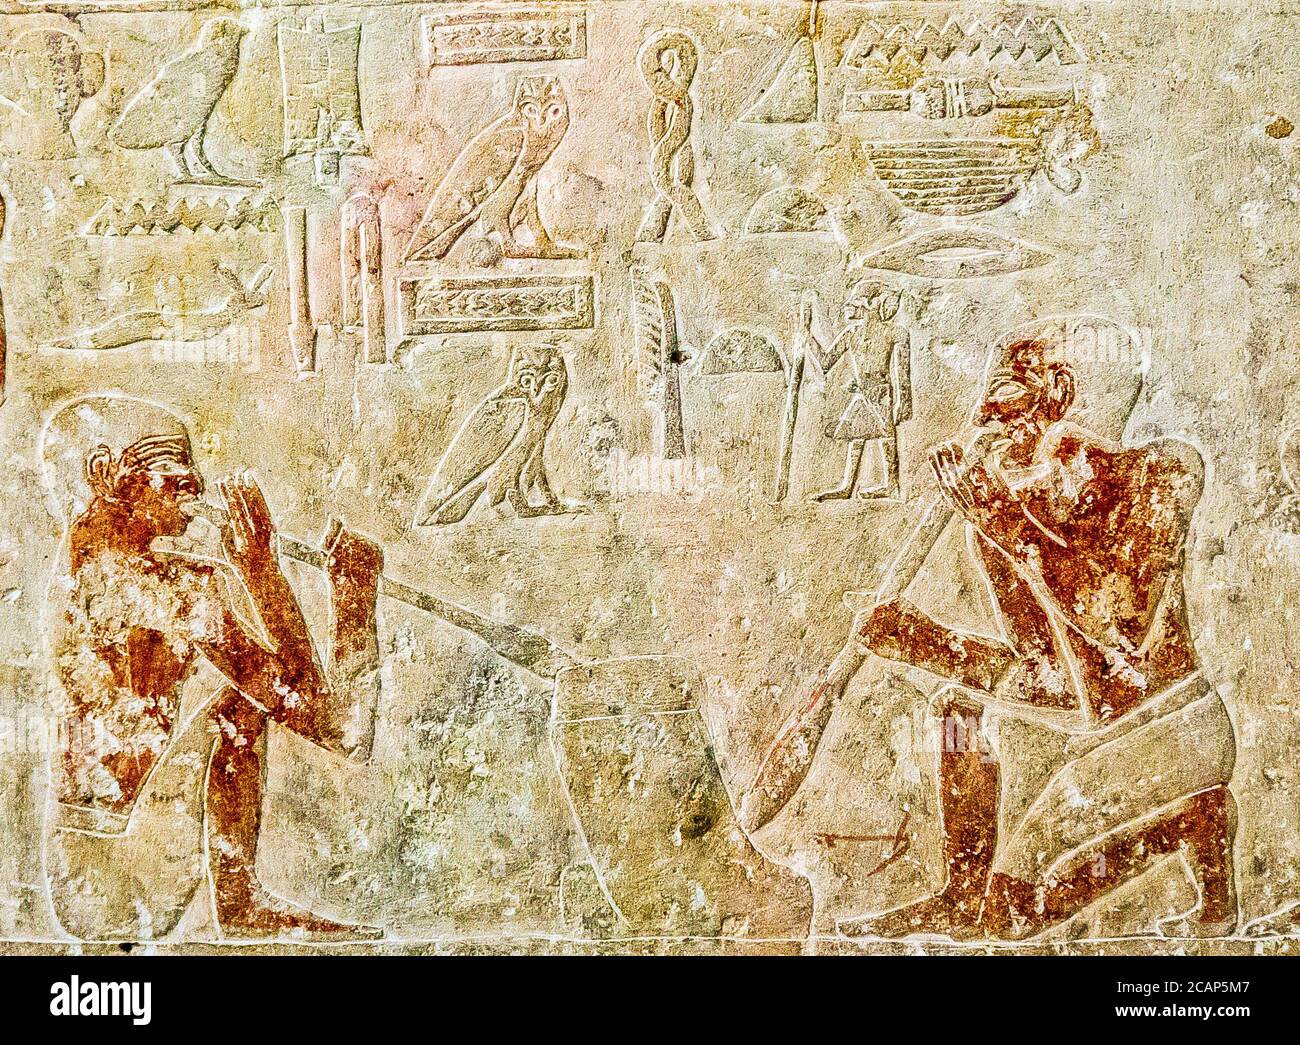 Égypte, le Caire, Musée égyptien, du tombeau de Kaemrehu, Saqqara, détail d'un grand relief représentant des artisans : or soufflé. Banque D'Images